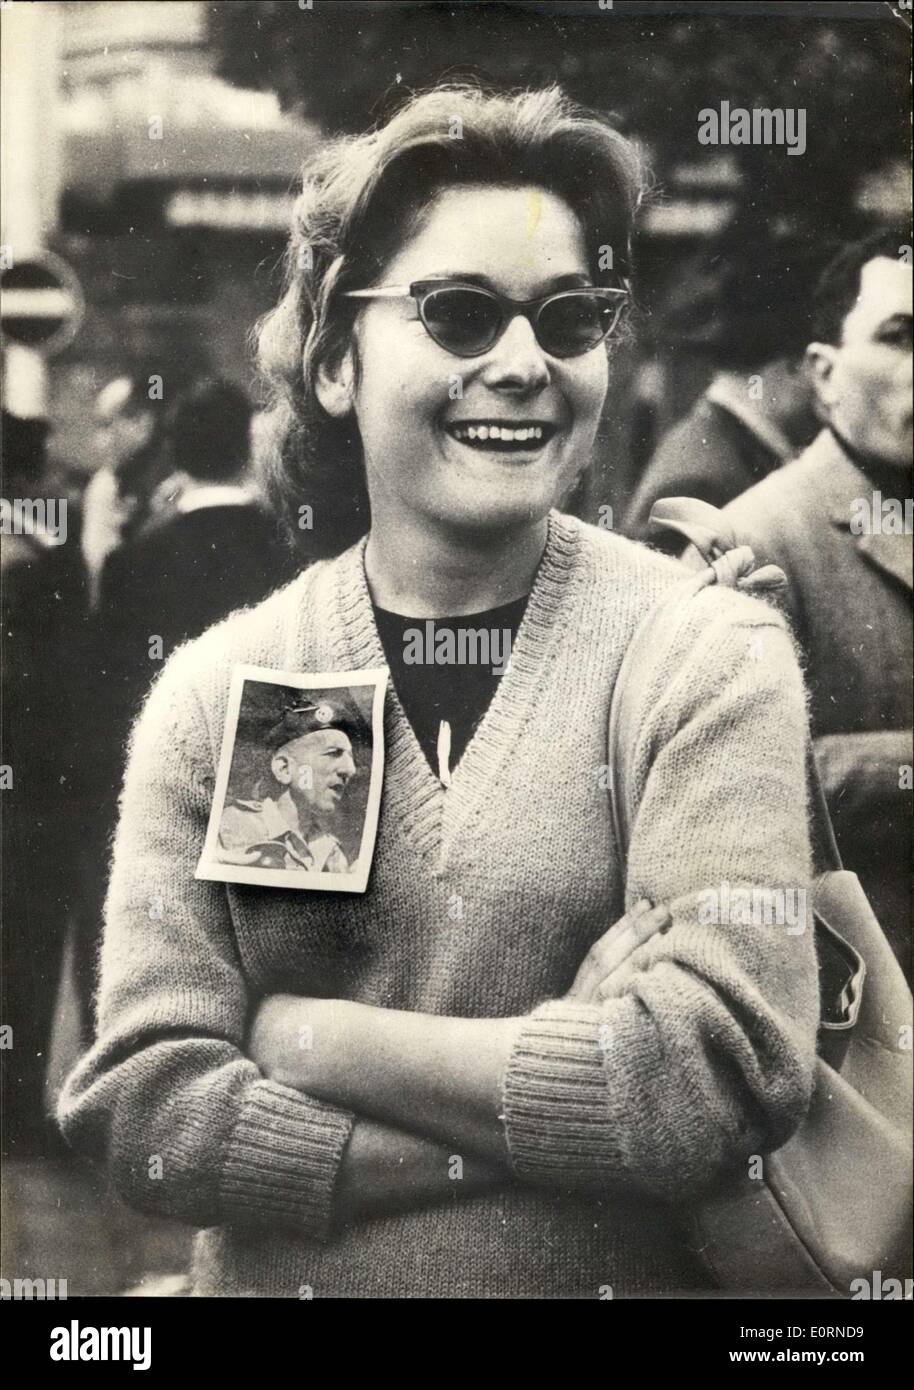 Gen 29, 1960 - la rivolta di Algeri OPS: una giovane ragazza francese la visualizzazione di una immagine di Massh che indossa imperniata sul suo pull-over. Foto Stock